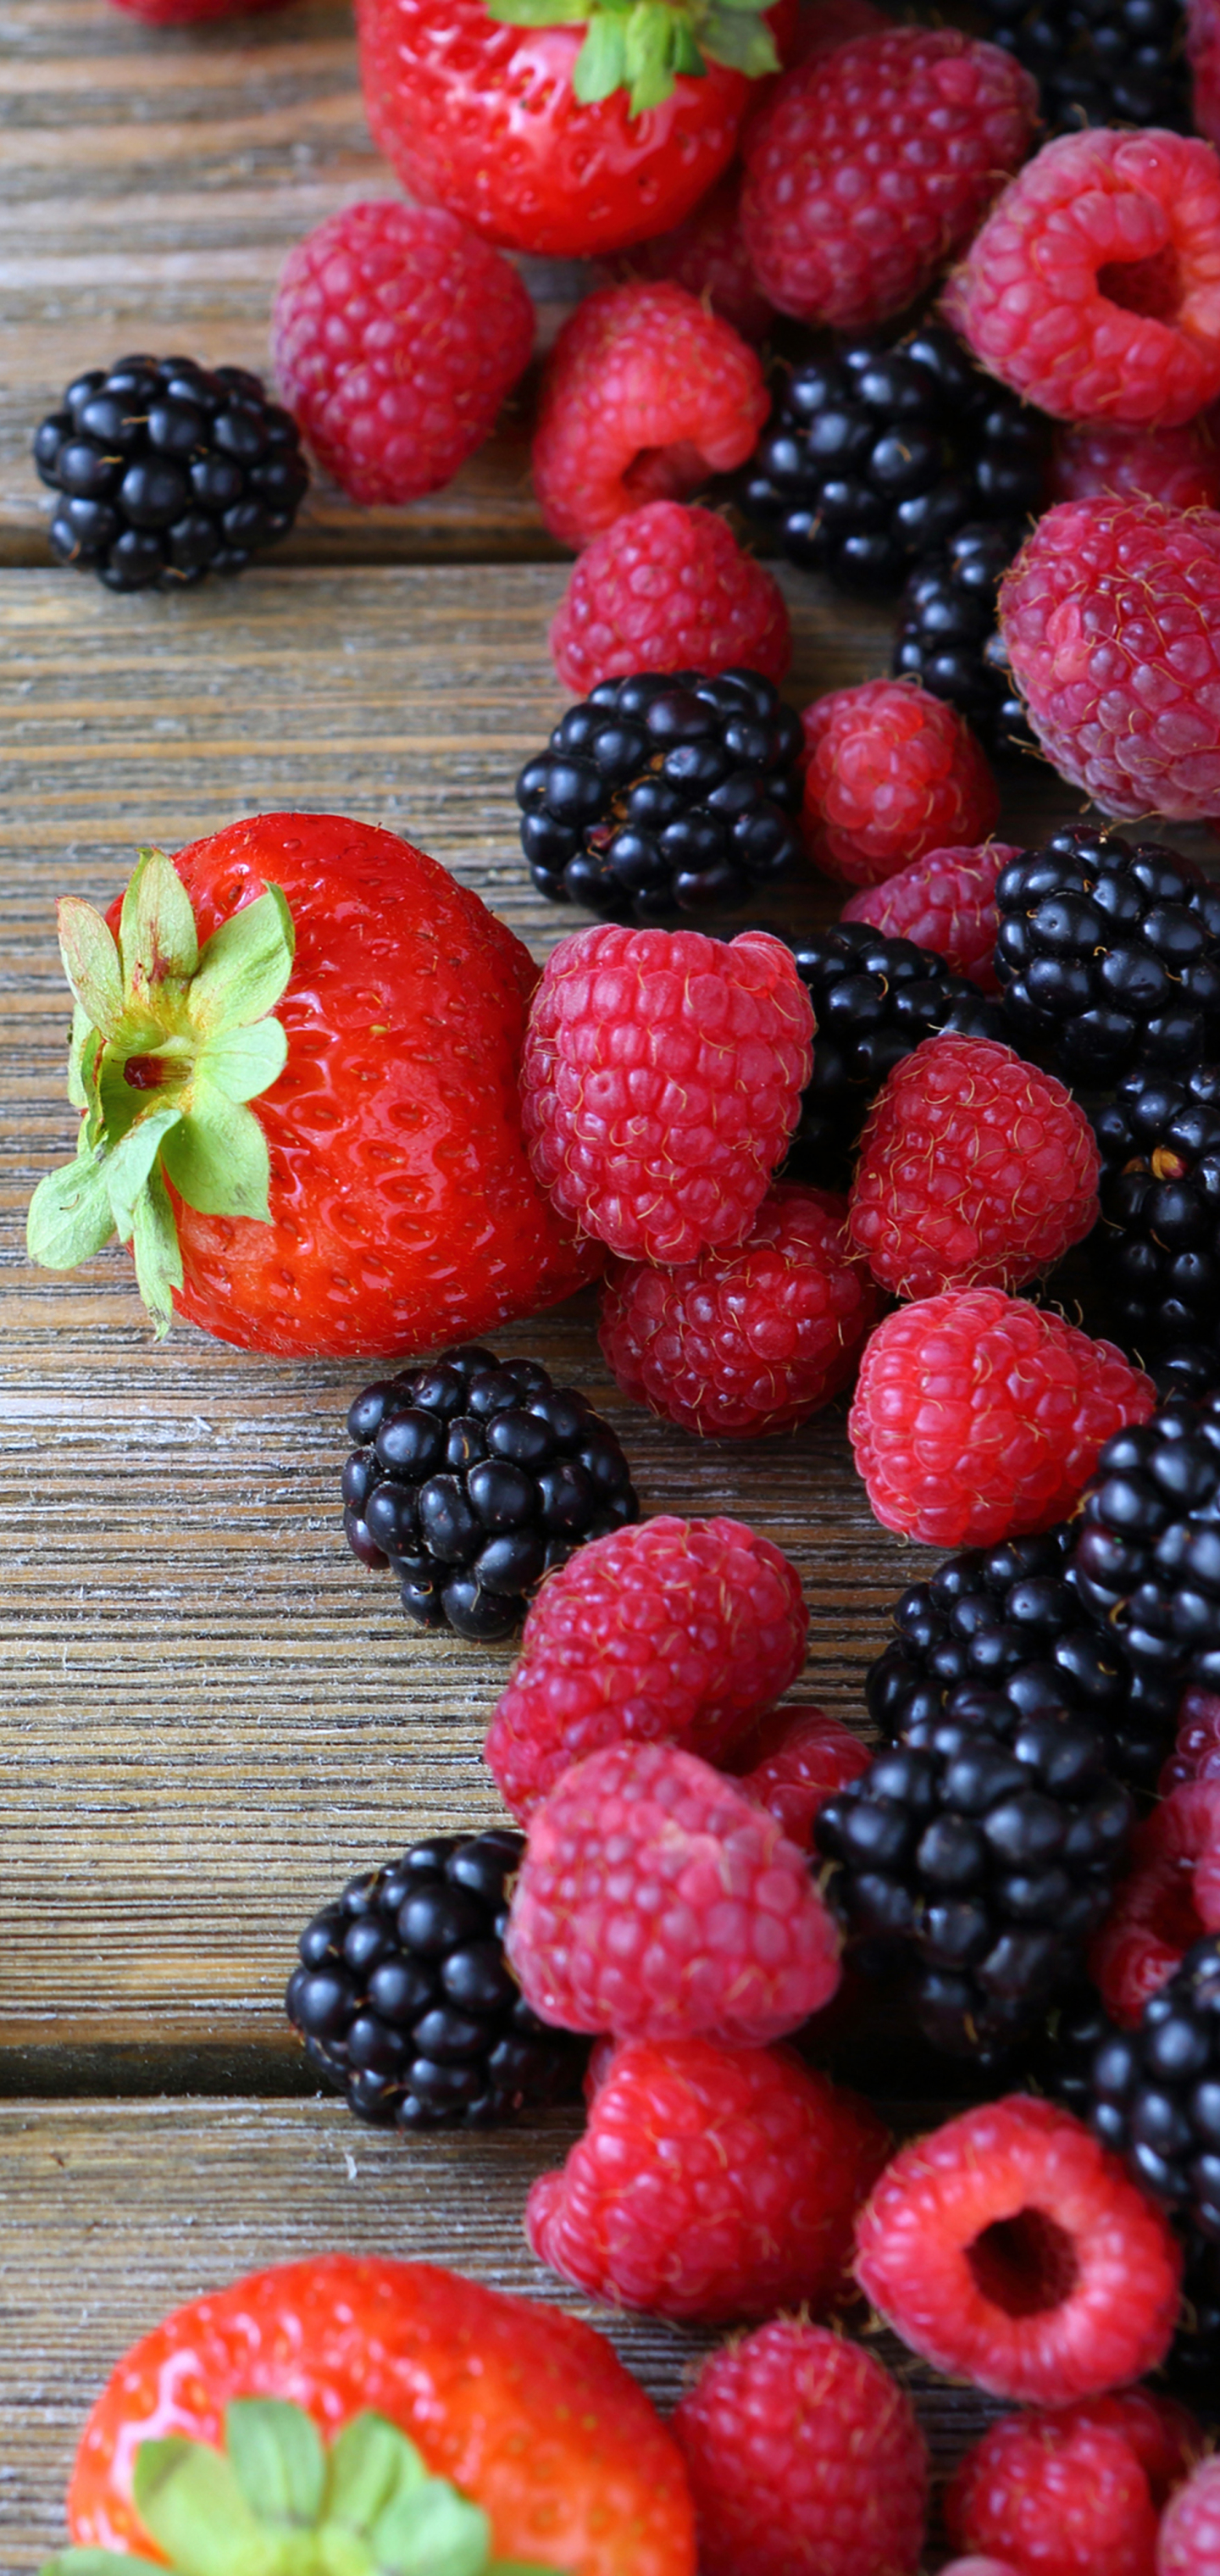 1341753 免費下載壁紙 食物, 浆果, 覆盆子, 树莓, 草莓, 黑莓 屏保和圖片